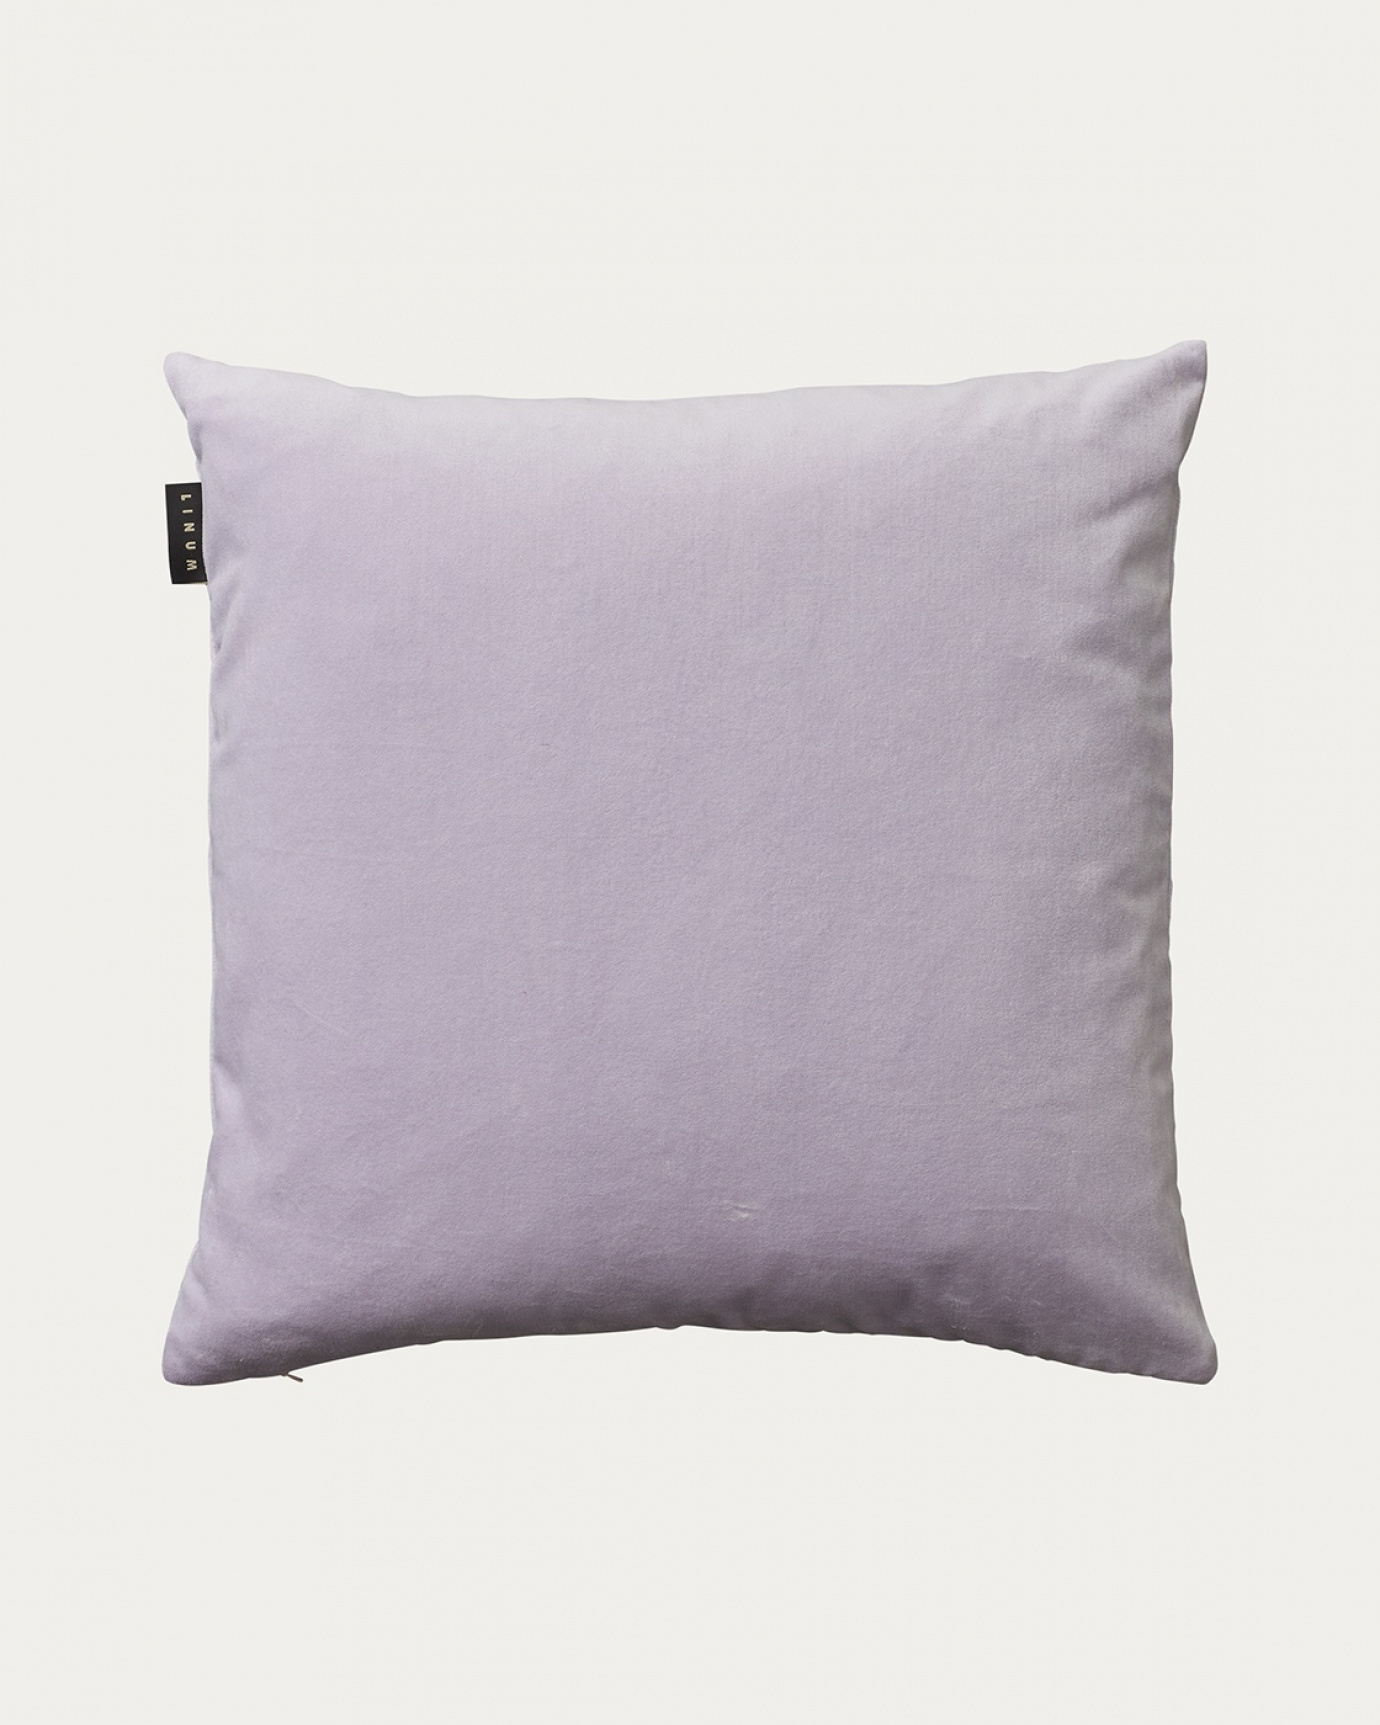 Produktbild strahlendes lavendellila PAOLO Kissenhülle aus weichem Baumwollsamt von LINUM DESIGN. Größe 50x50 cm.